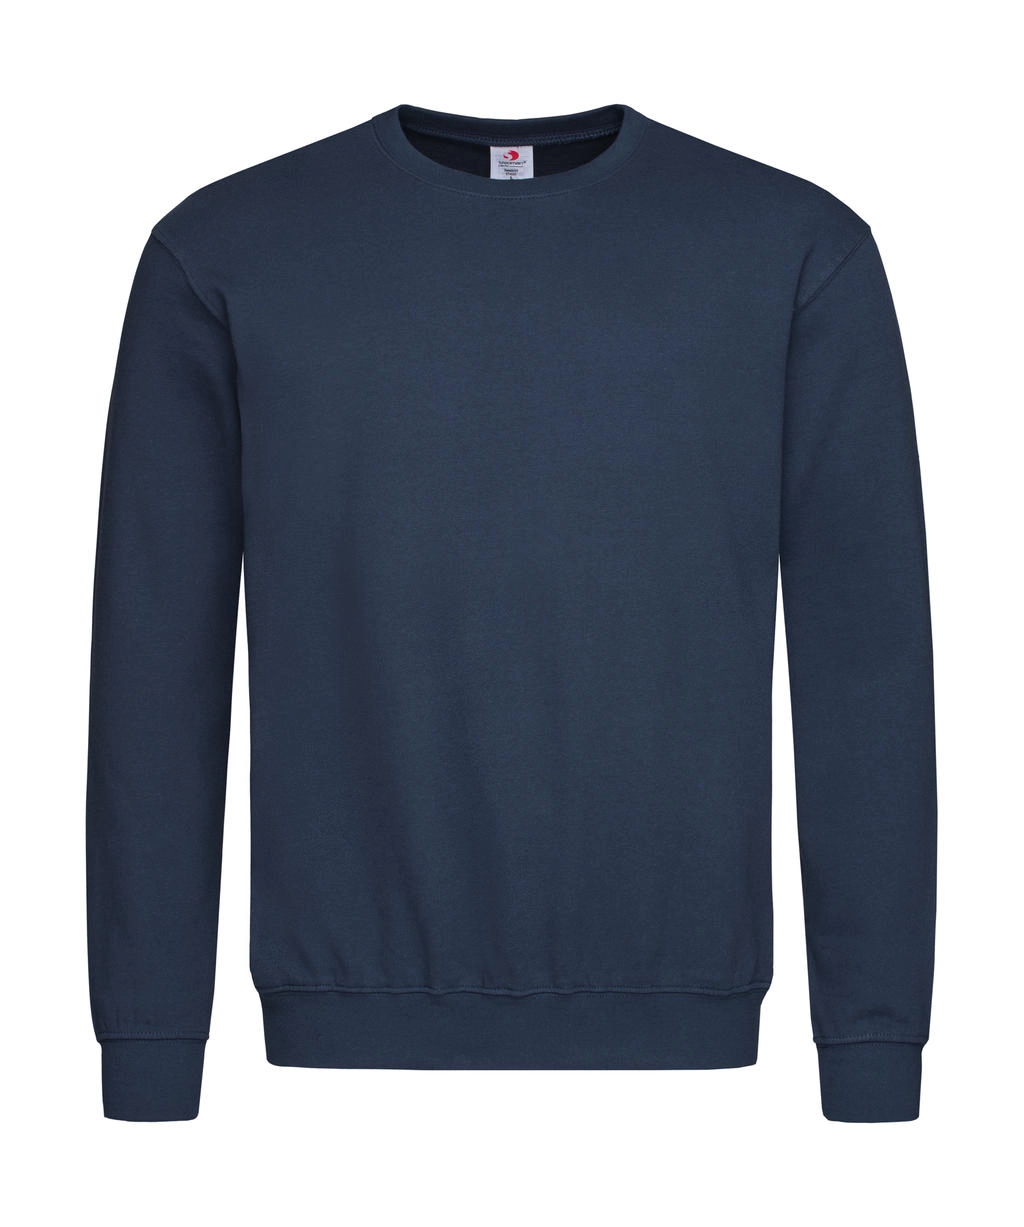 Unisex Sweatshirt Classic zum Besticken und Bedrucken in der Farbe Navy mit Ihren Logo, Schriftzug oder Motiv.